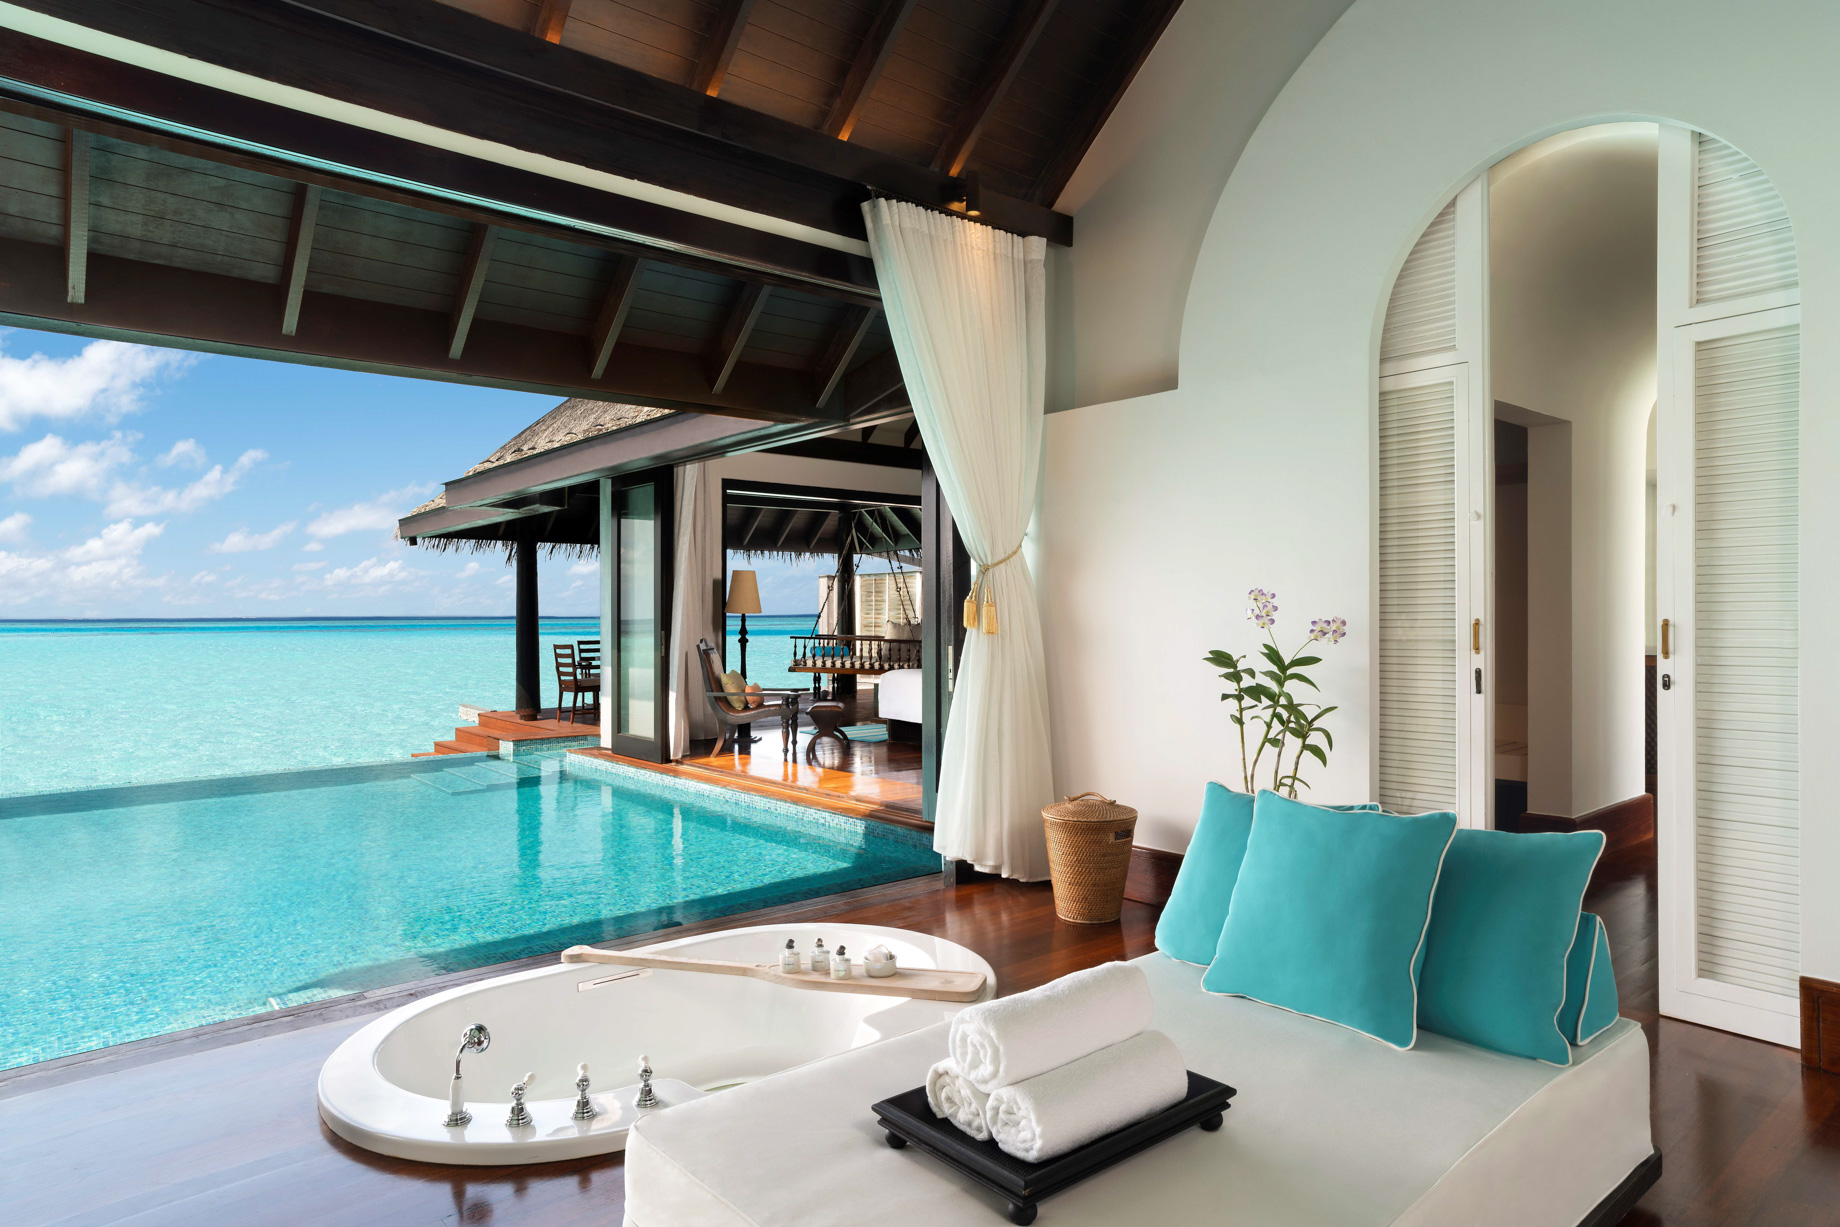 Anantara Kihavah Maldives Villas Resort - Baa Atoll, Maldives - Over Water Pool Villa Ocean View